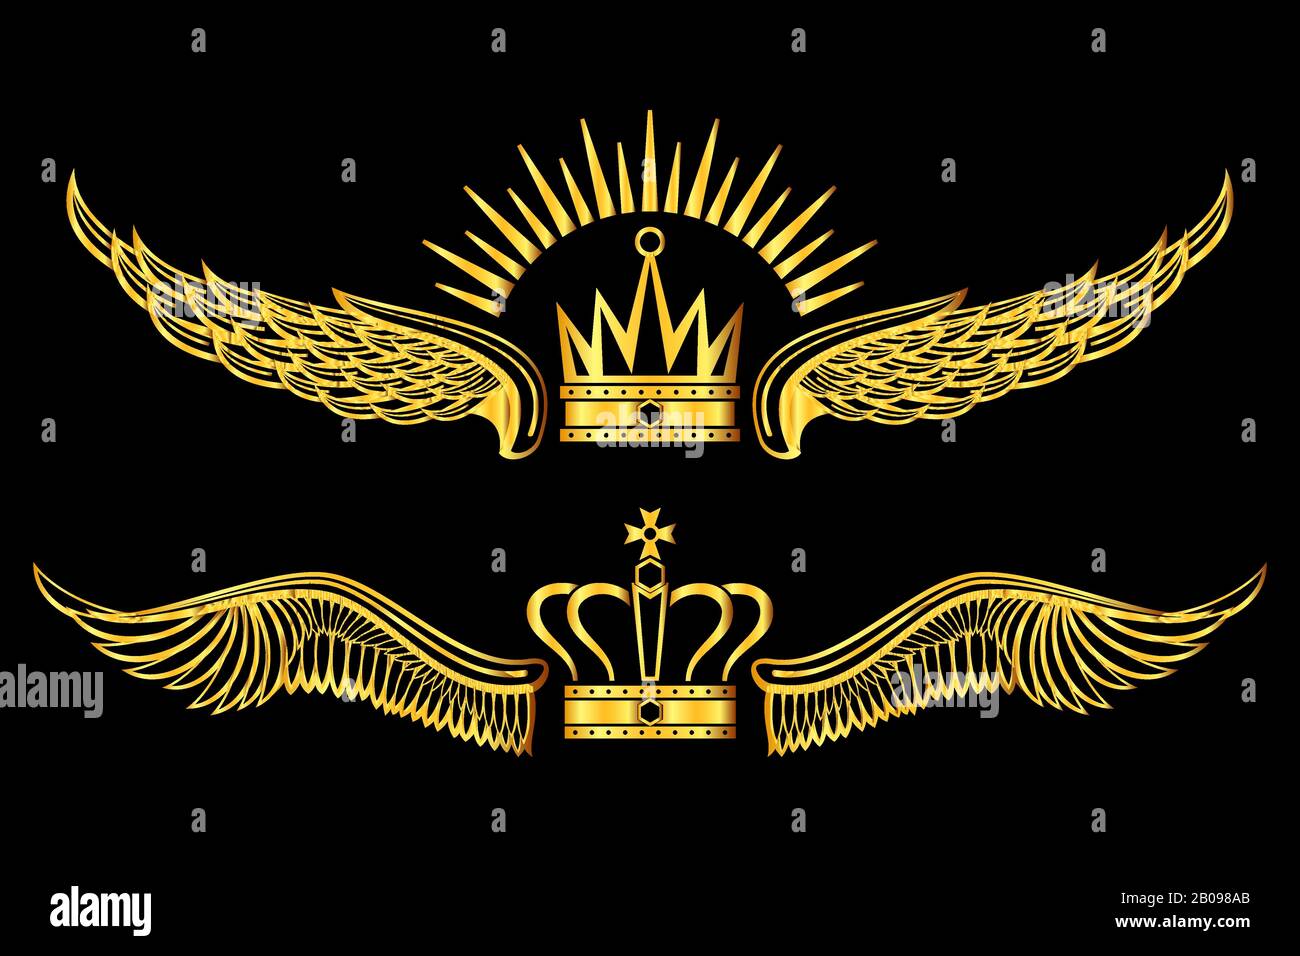 Set of golden winged crowns logos black background. Golden luxury royal emblem. Vector illustration Stock Vector